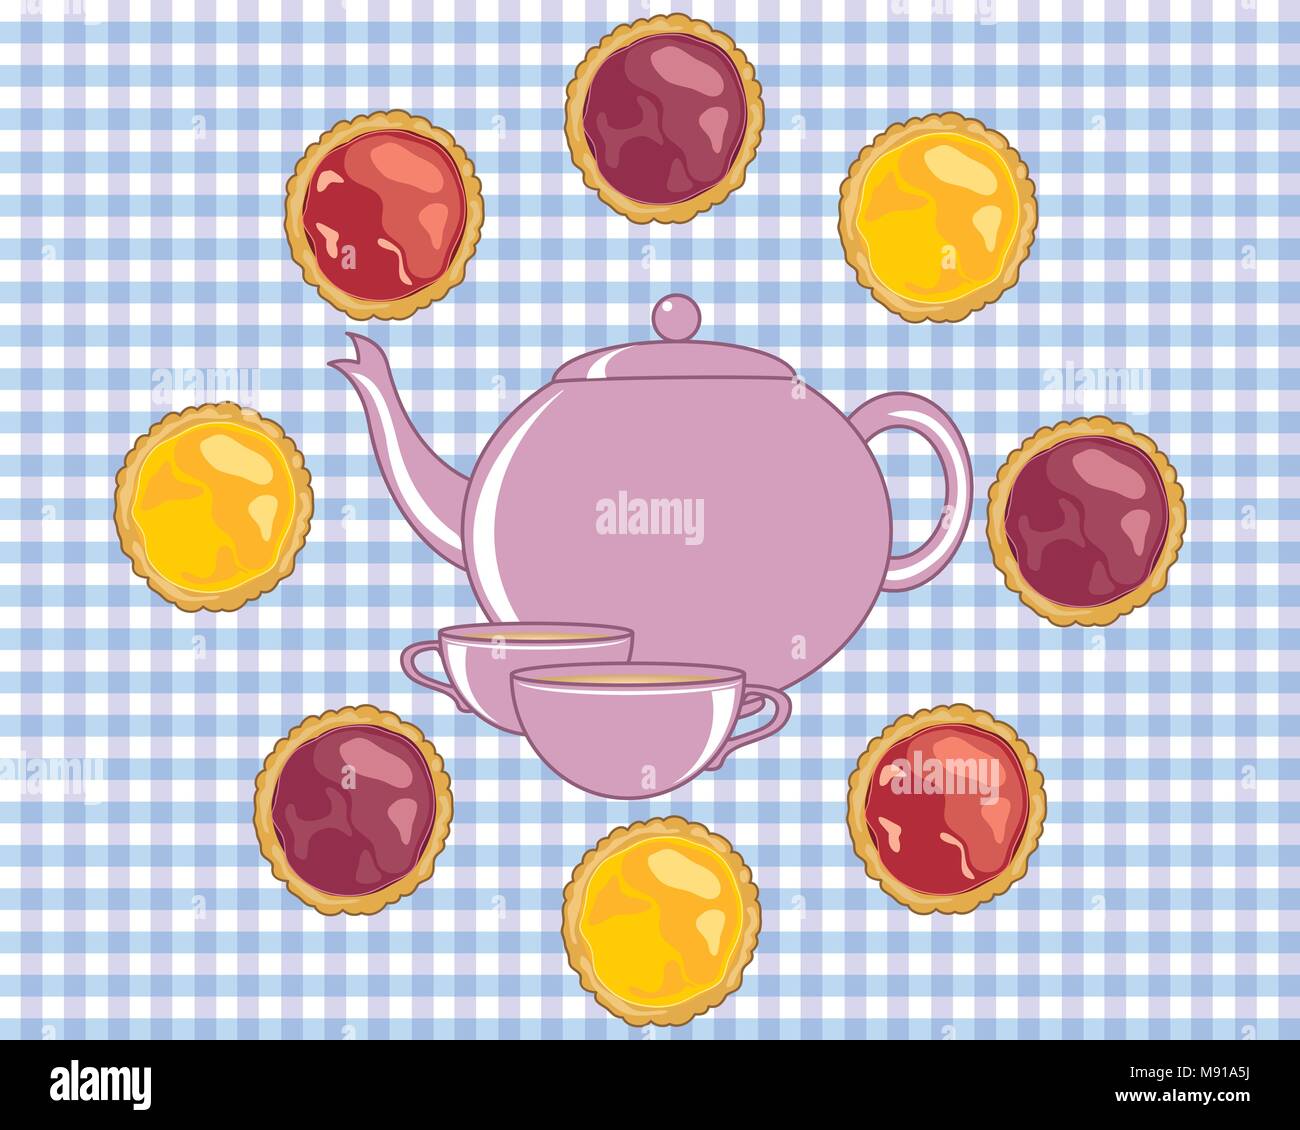 Un vecteur illustration au format eps d'une théière avec tasse entouré par de délicieuses tartelettes à la confiture dans un format d'annonce Illustration de Vecteur